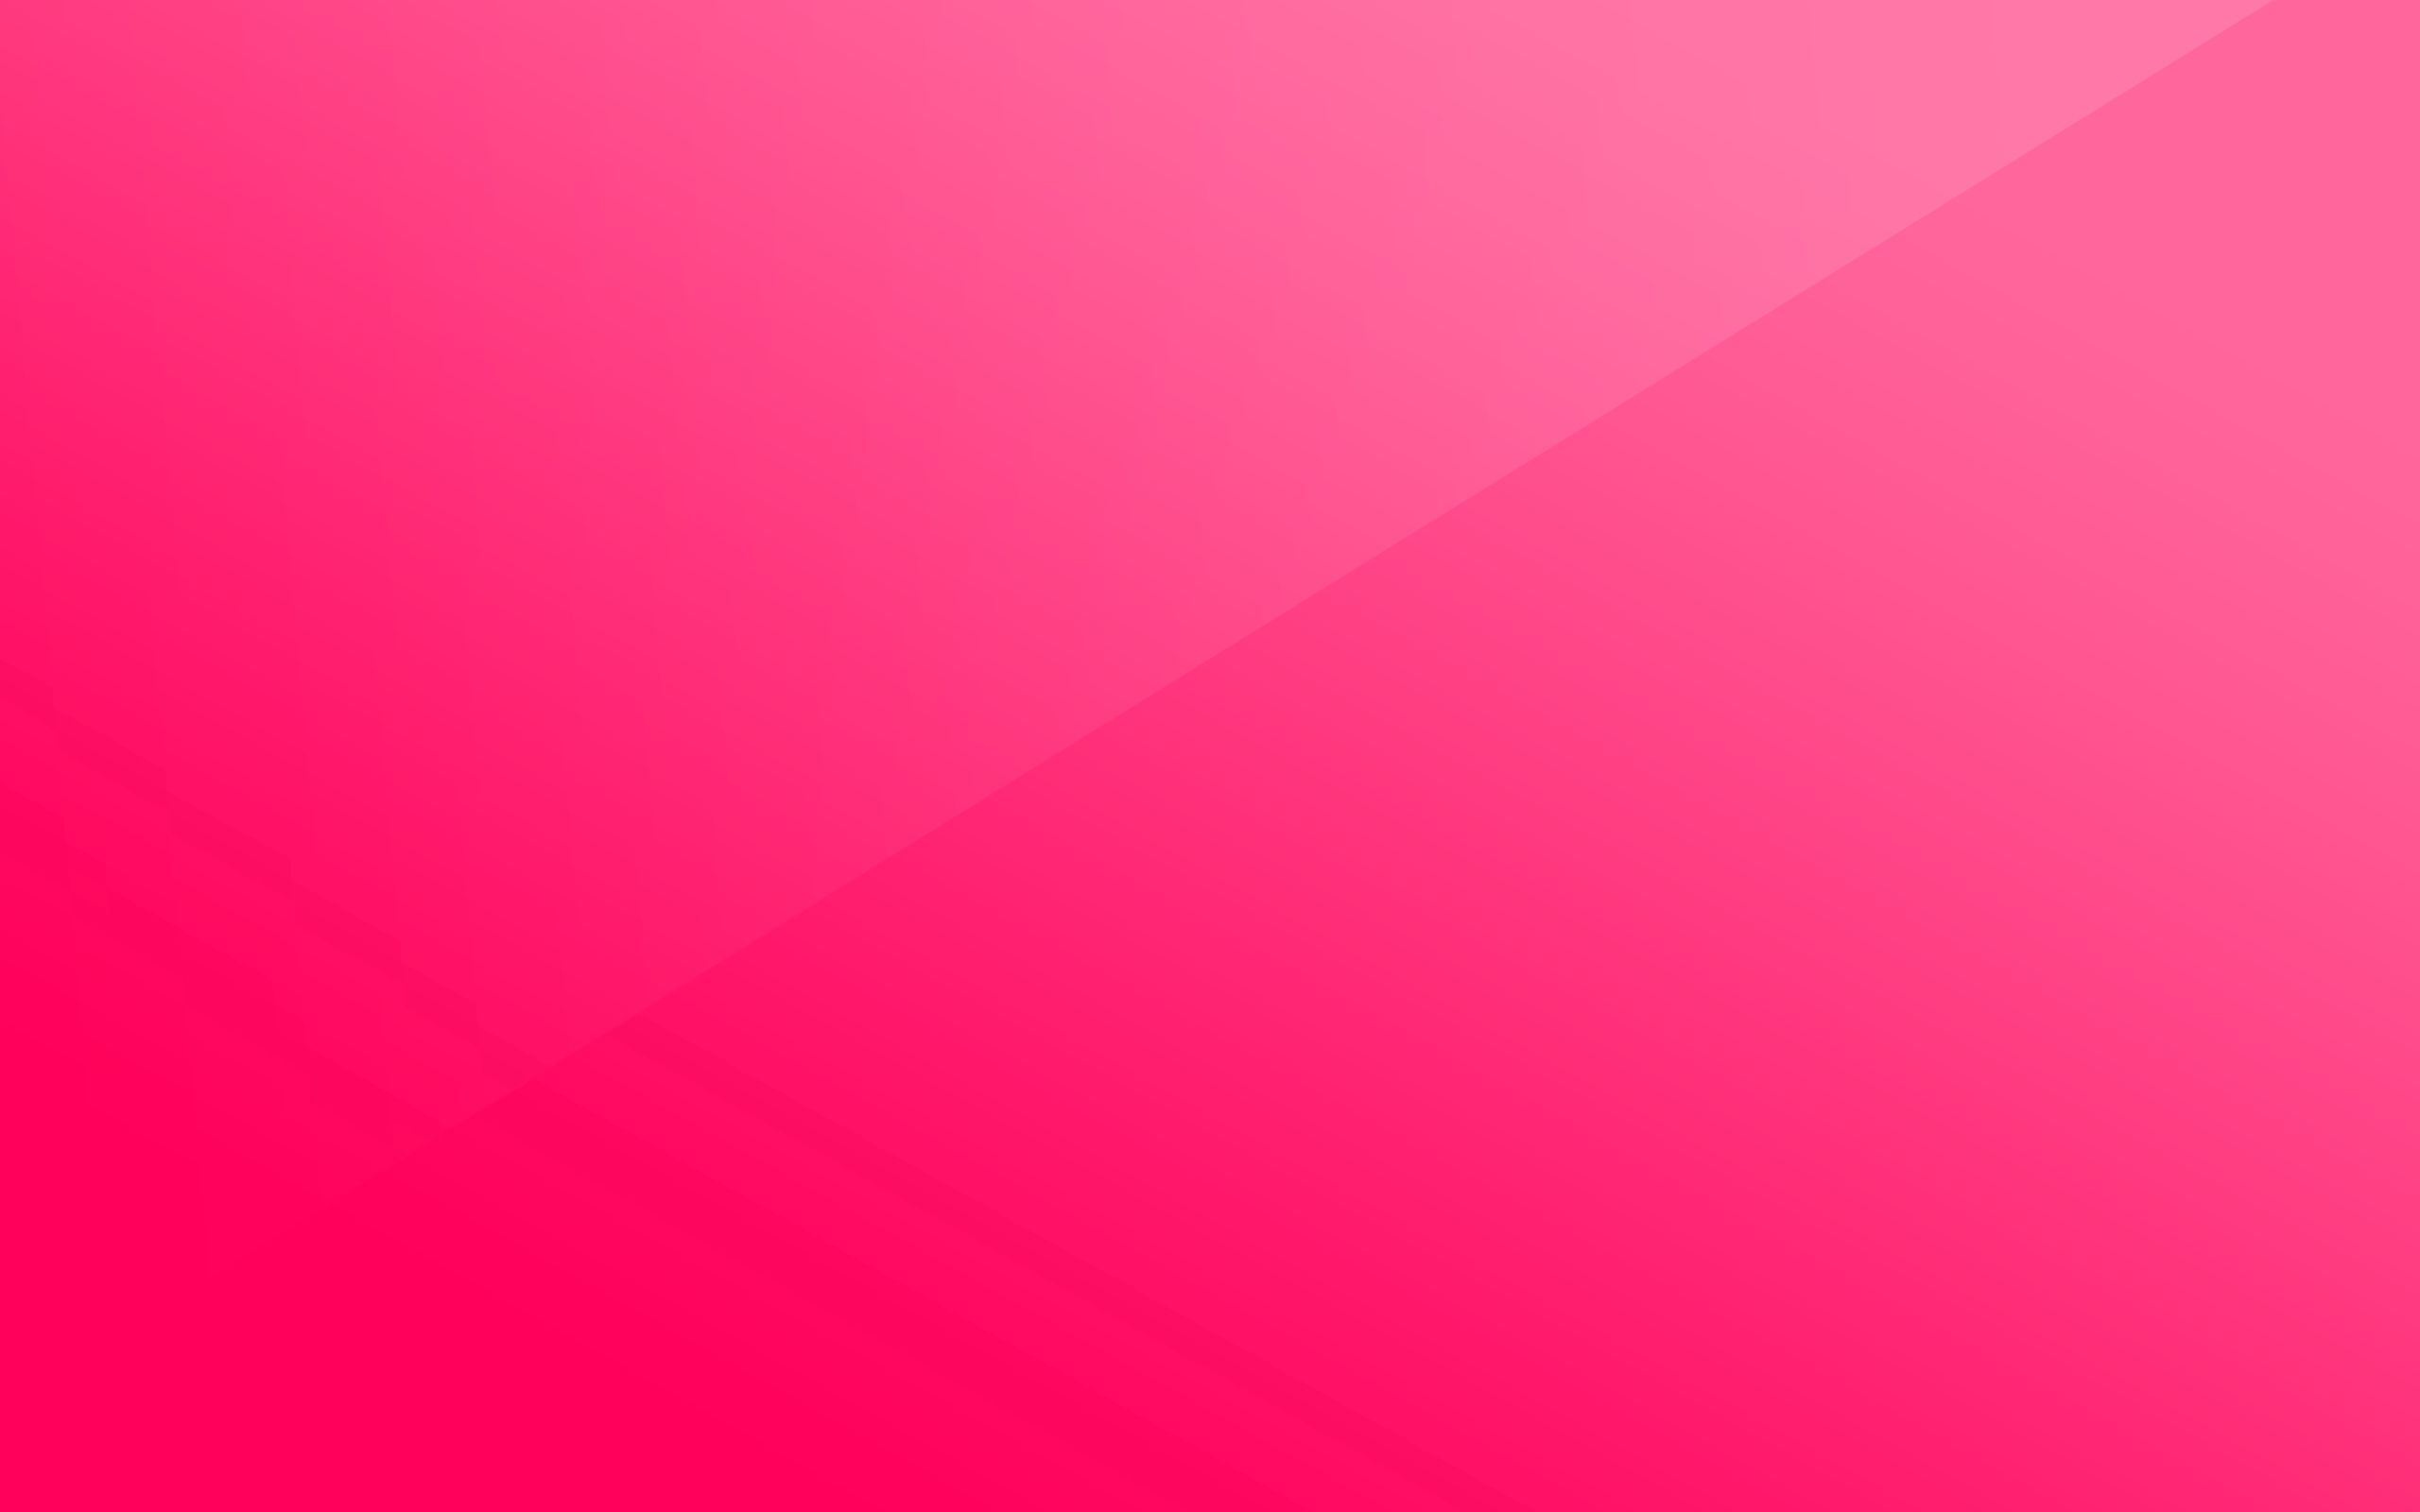 Pink 1080p